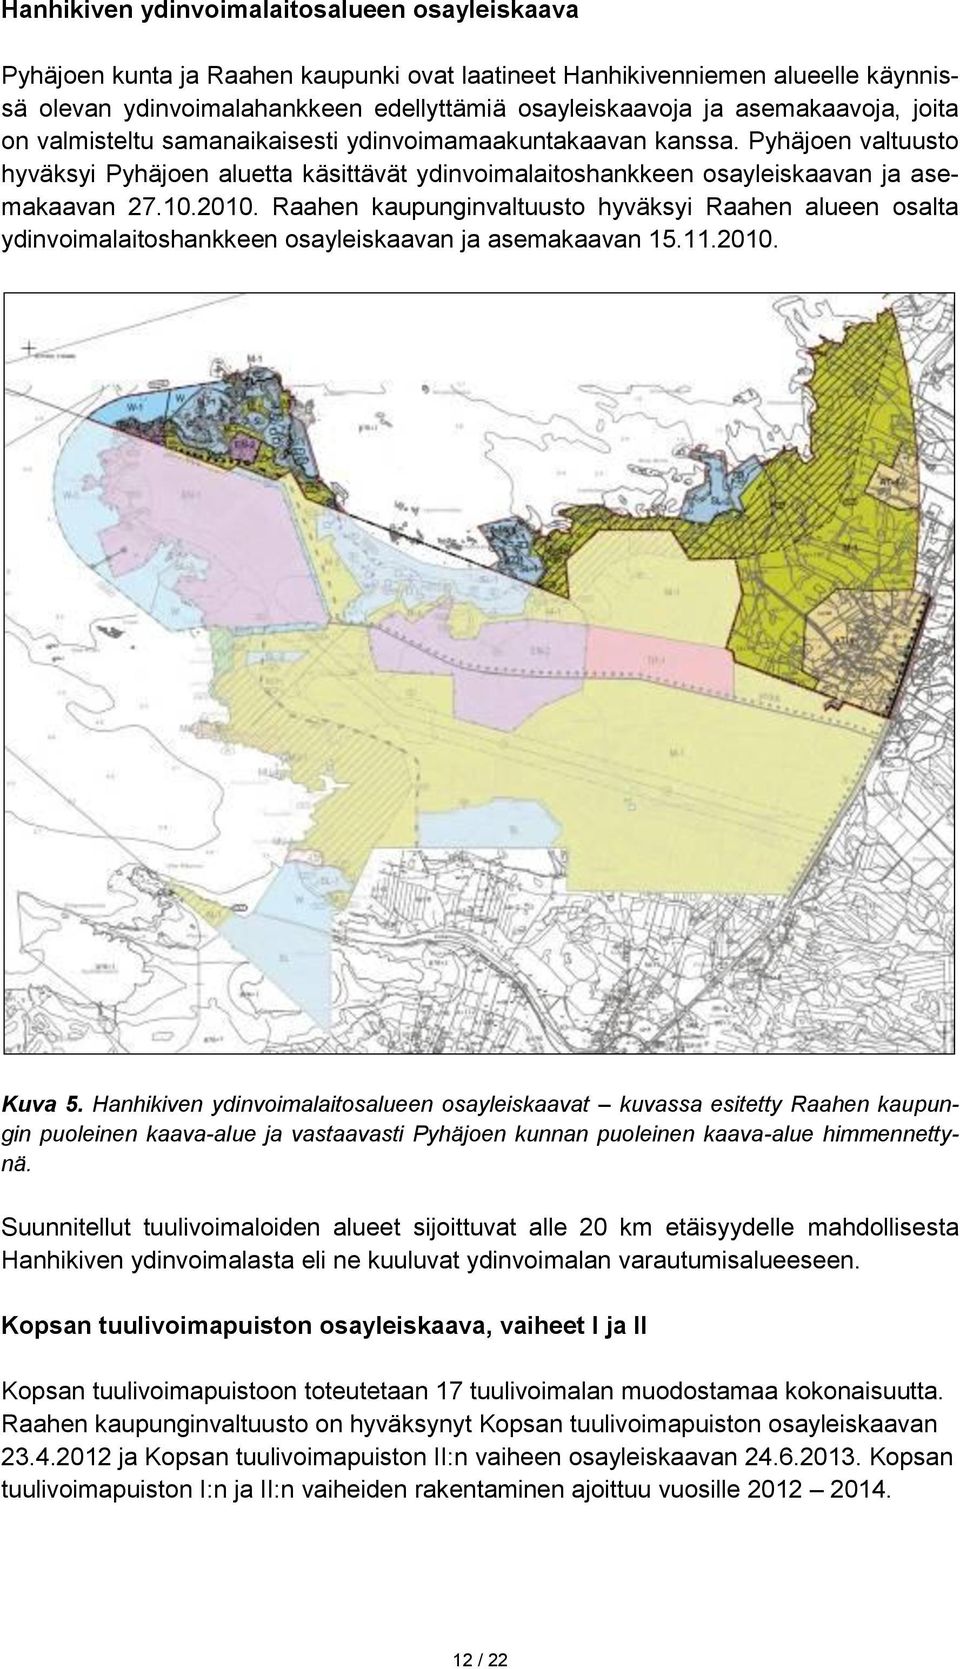 2010. Raahen kaupunginvaltuusto hyväksyi Raahen alueen osalta ydinvoimalaitoshankkeen osayleiskaavan ja asemakaavan 15.11.2010. Kuva 5.